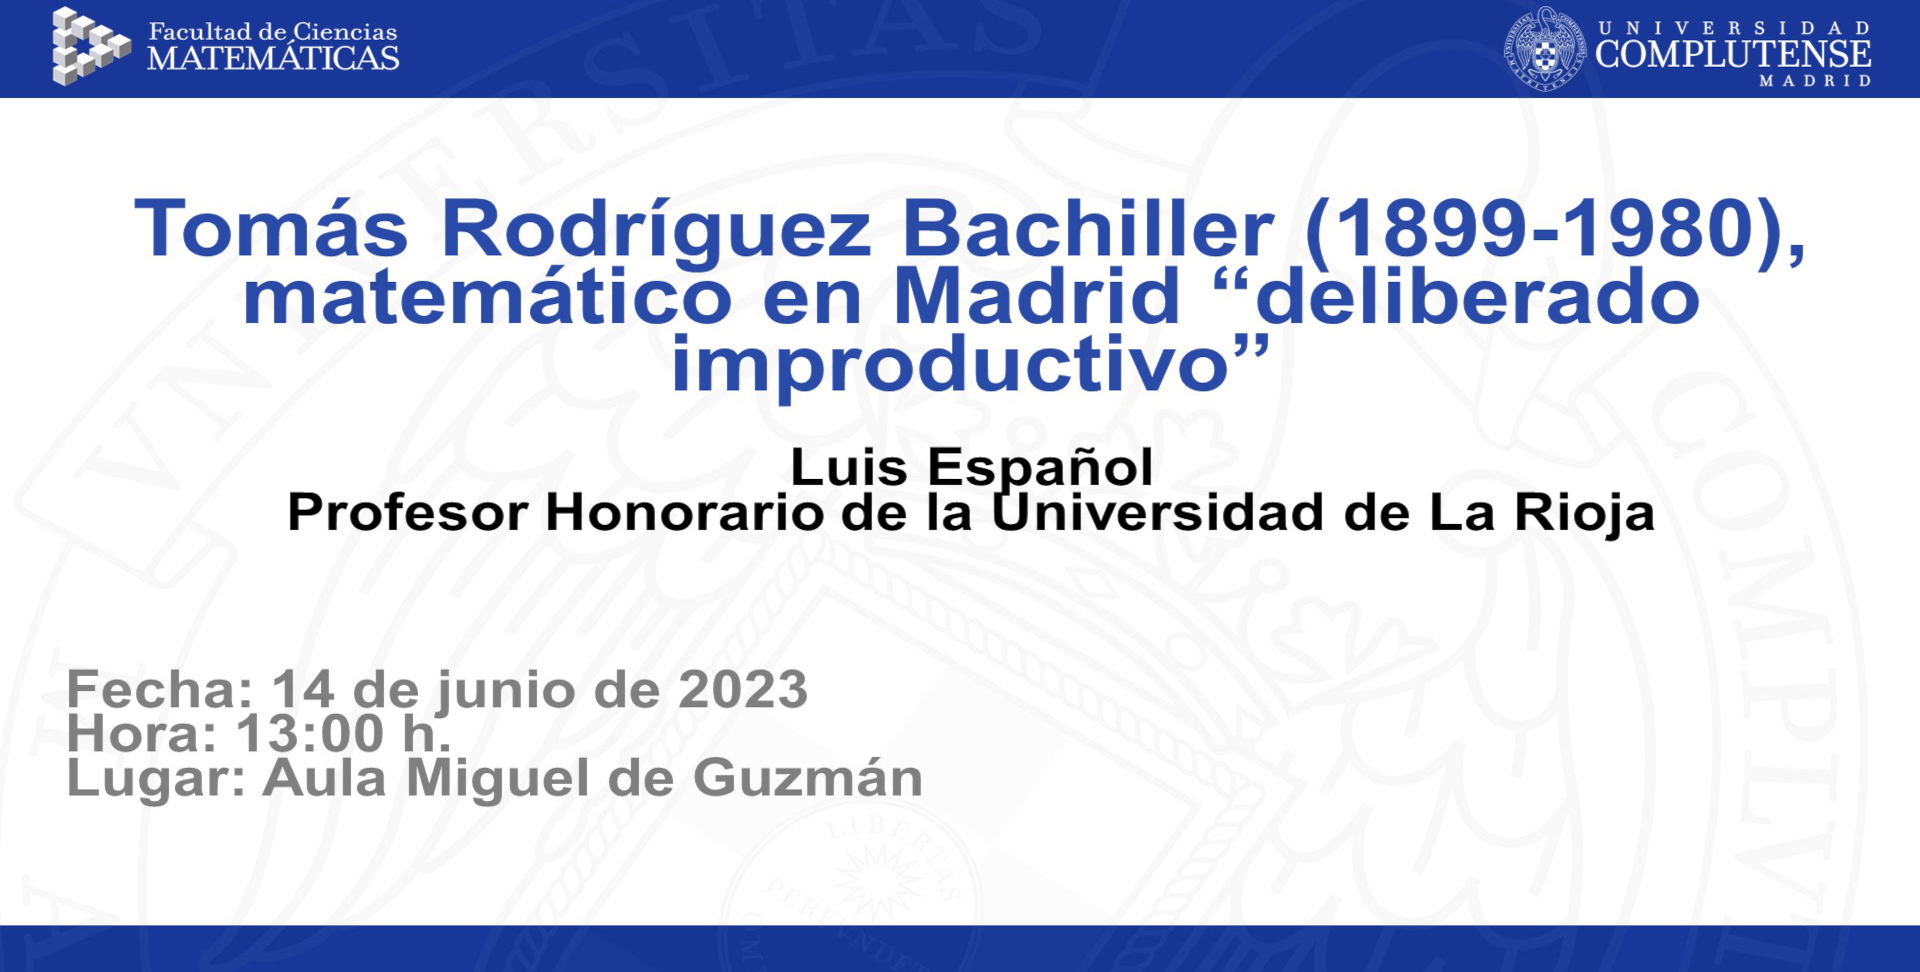 Conferencia: Tomás Rodríguez Bachiller (1899-1980)